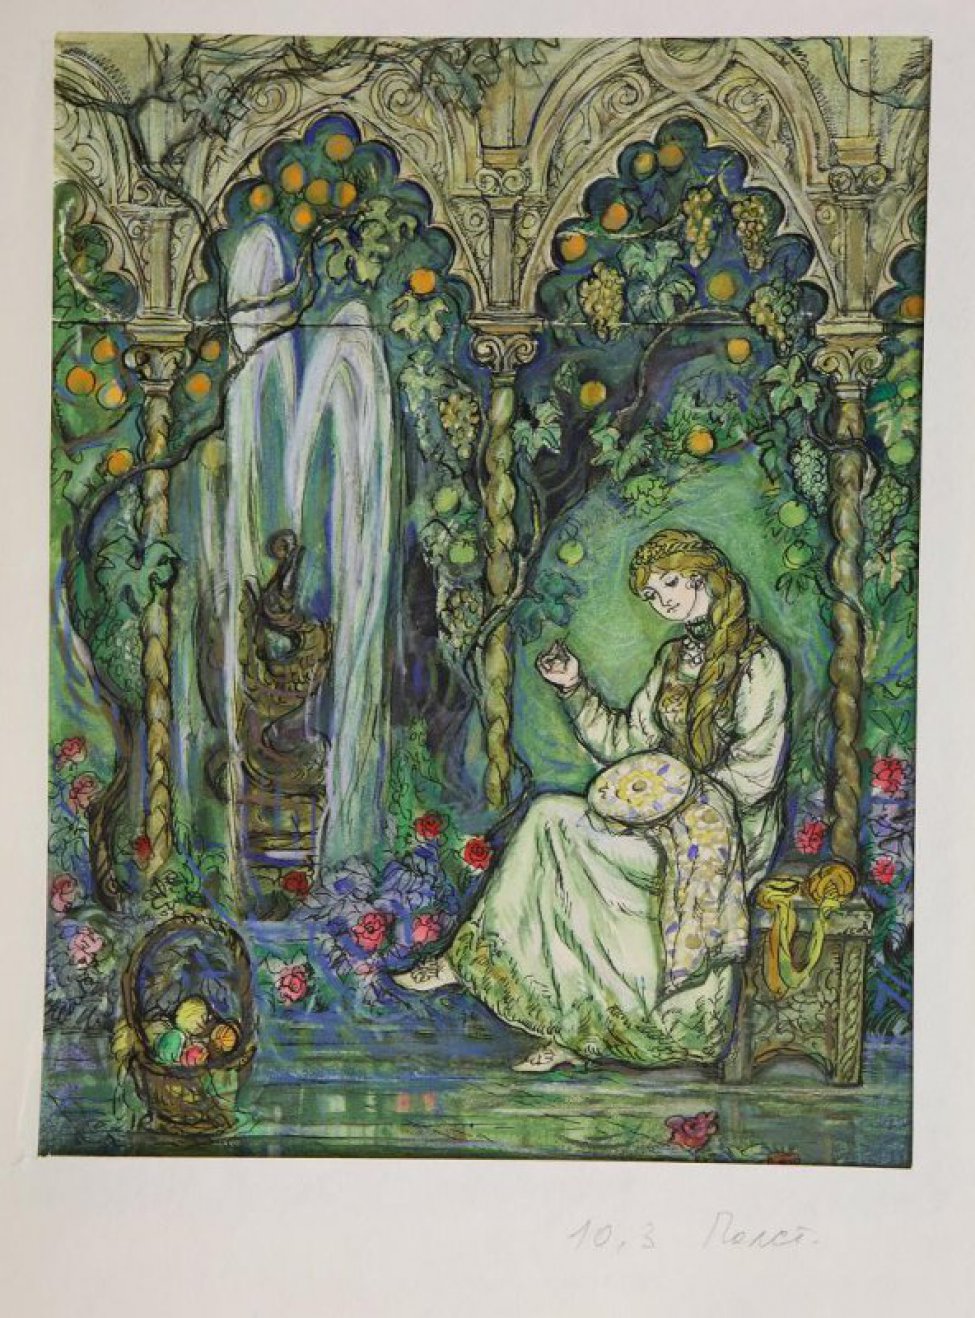 Изображена девушка, сидящая с вышиванием в садовой беседке у фонтана.